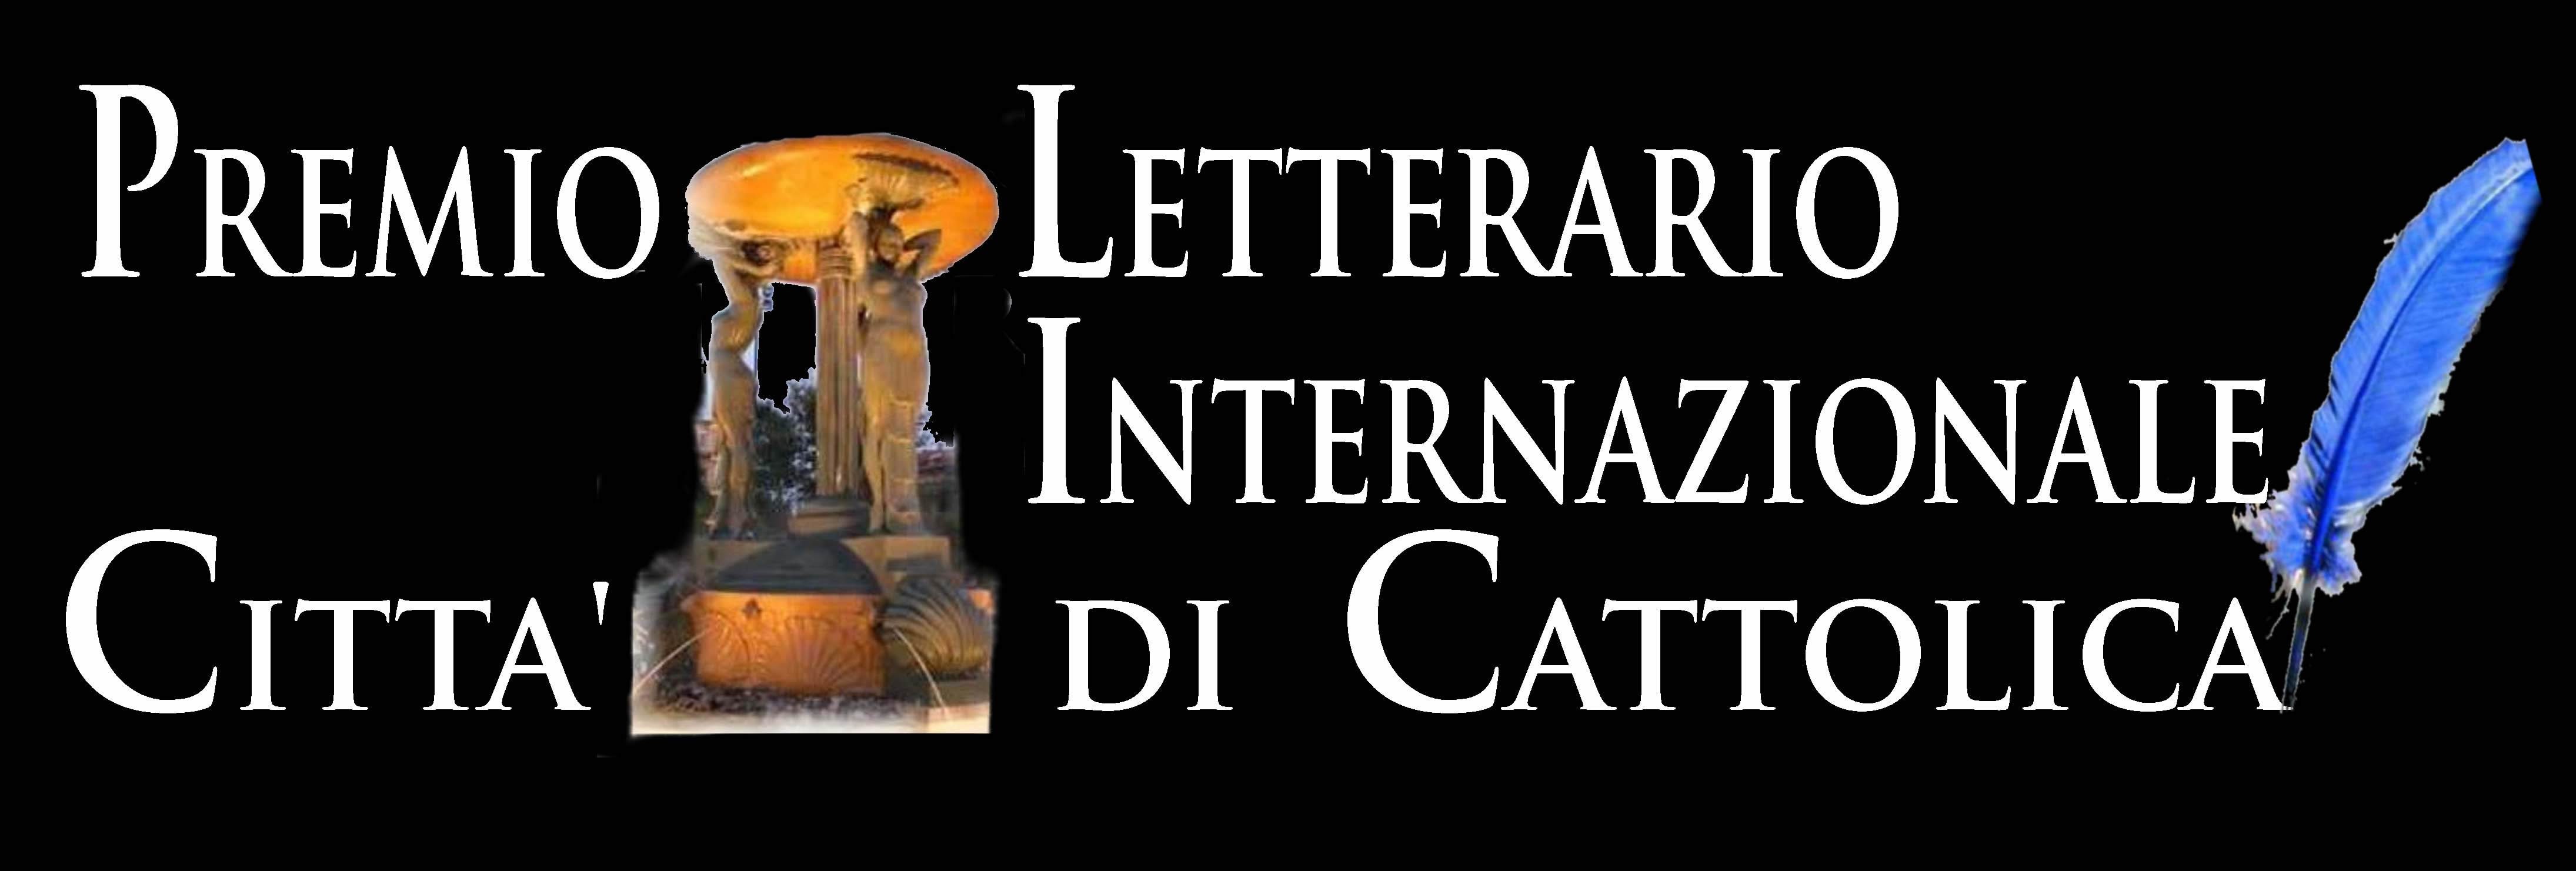 Premio Letterario Internazionale Città di Cattolica – Pegasus Literary Awards 2021